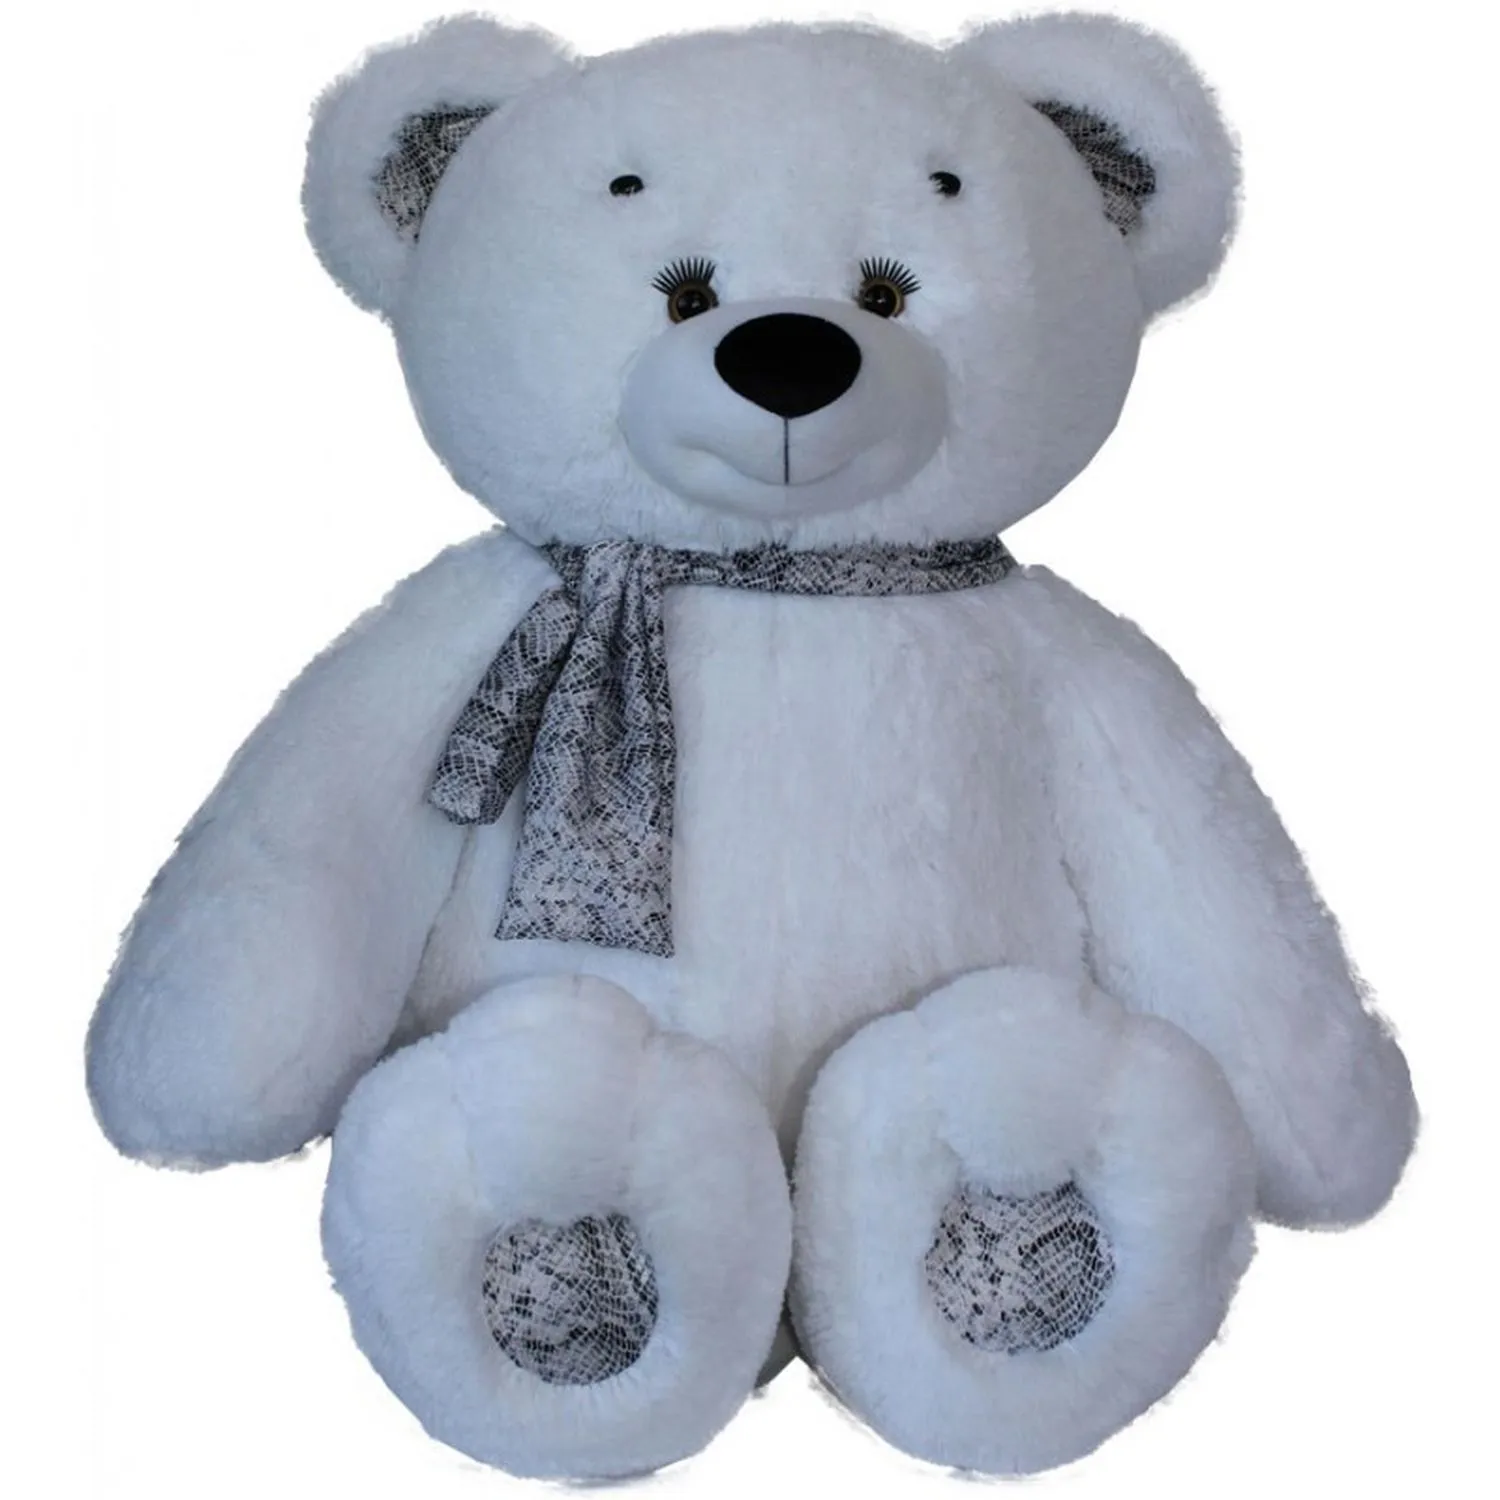 Медведь снежок. Медвежонок снежок. Медведь снежок игрушка. Мягкая игрушка Orange Toys медведь снежок 50 см. Ёлочная игрушка Медвежонок тучка.